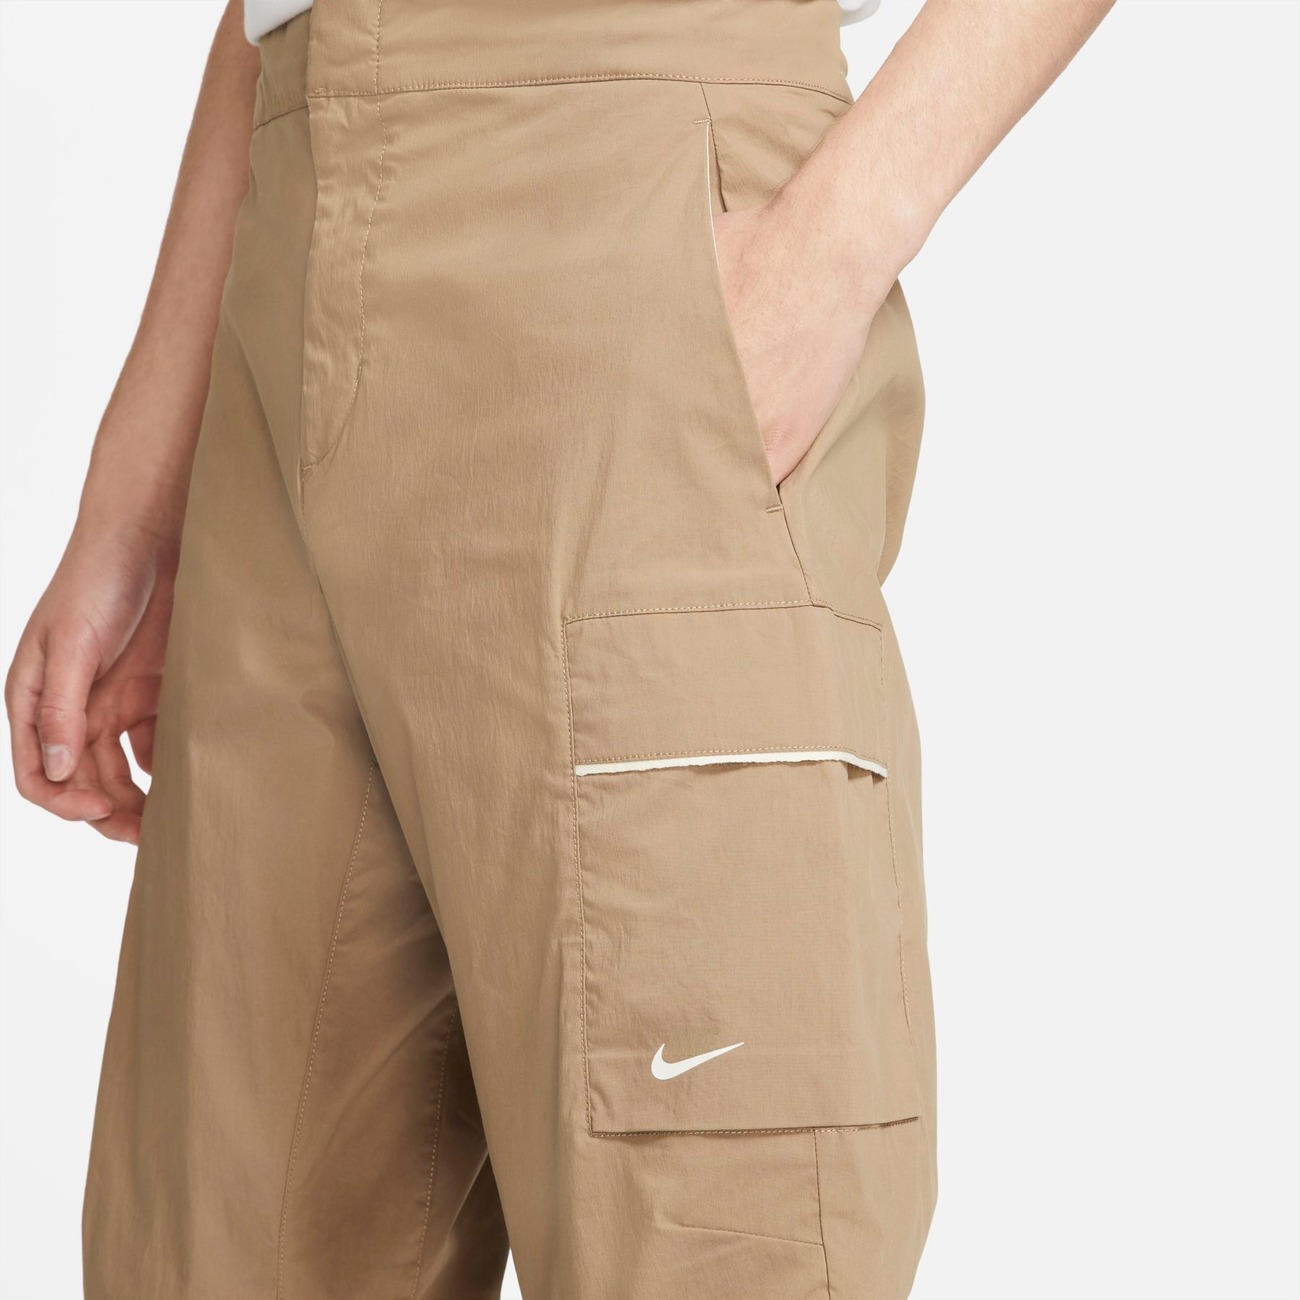 Calça Nike Sportswear Style Essentials Masculina - Foto 3